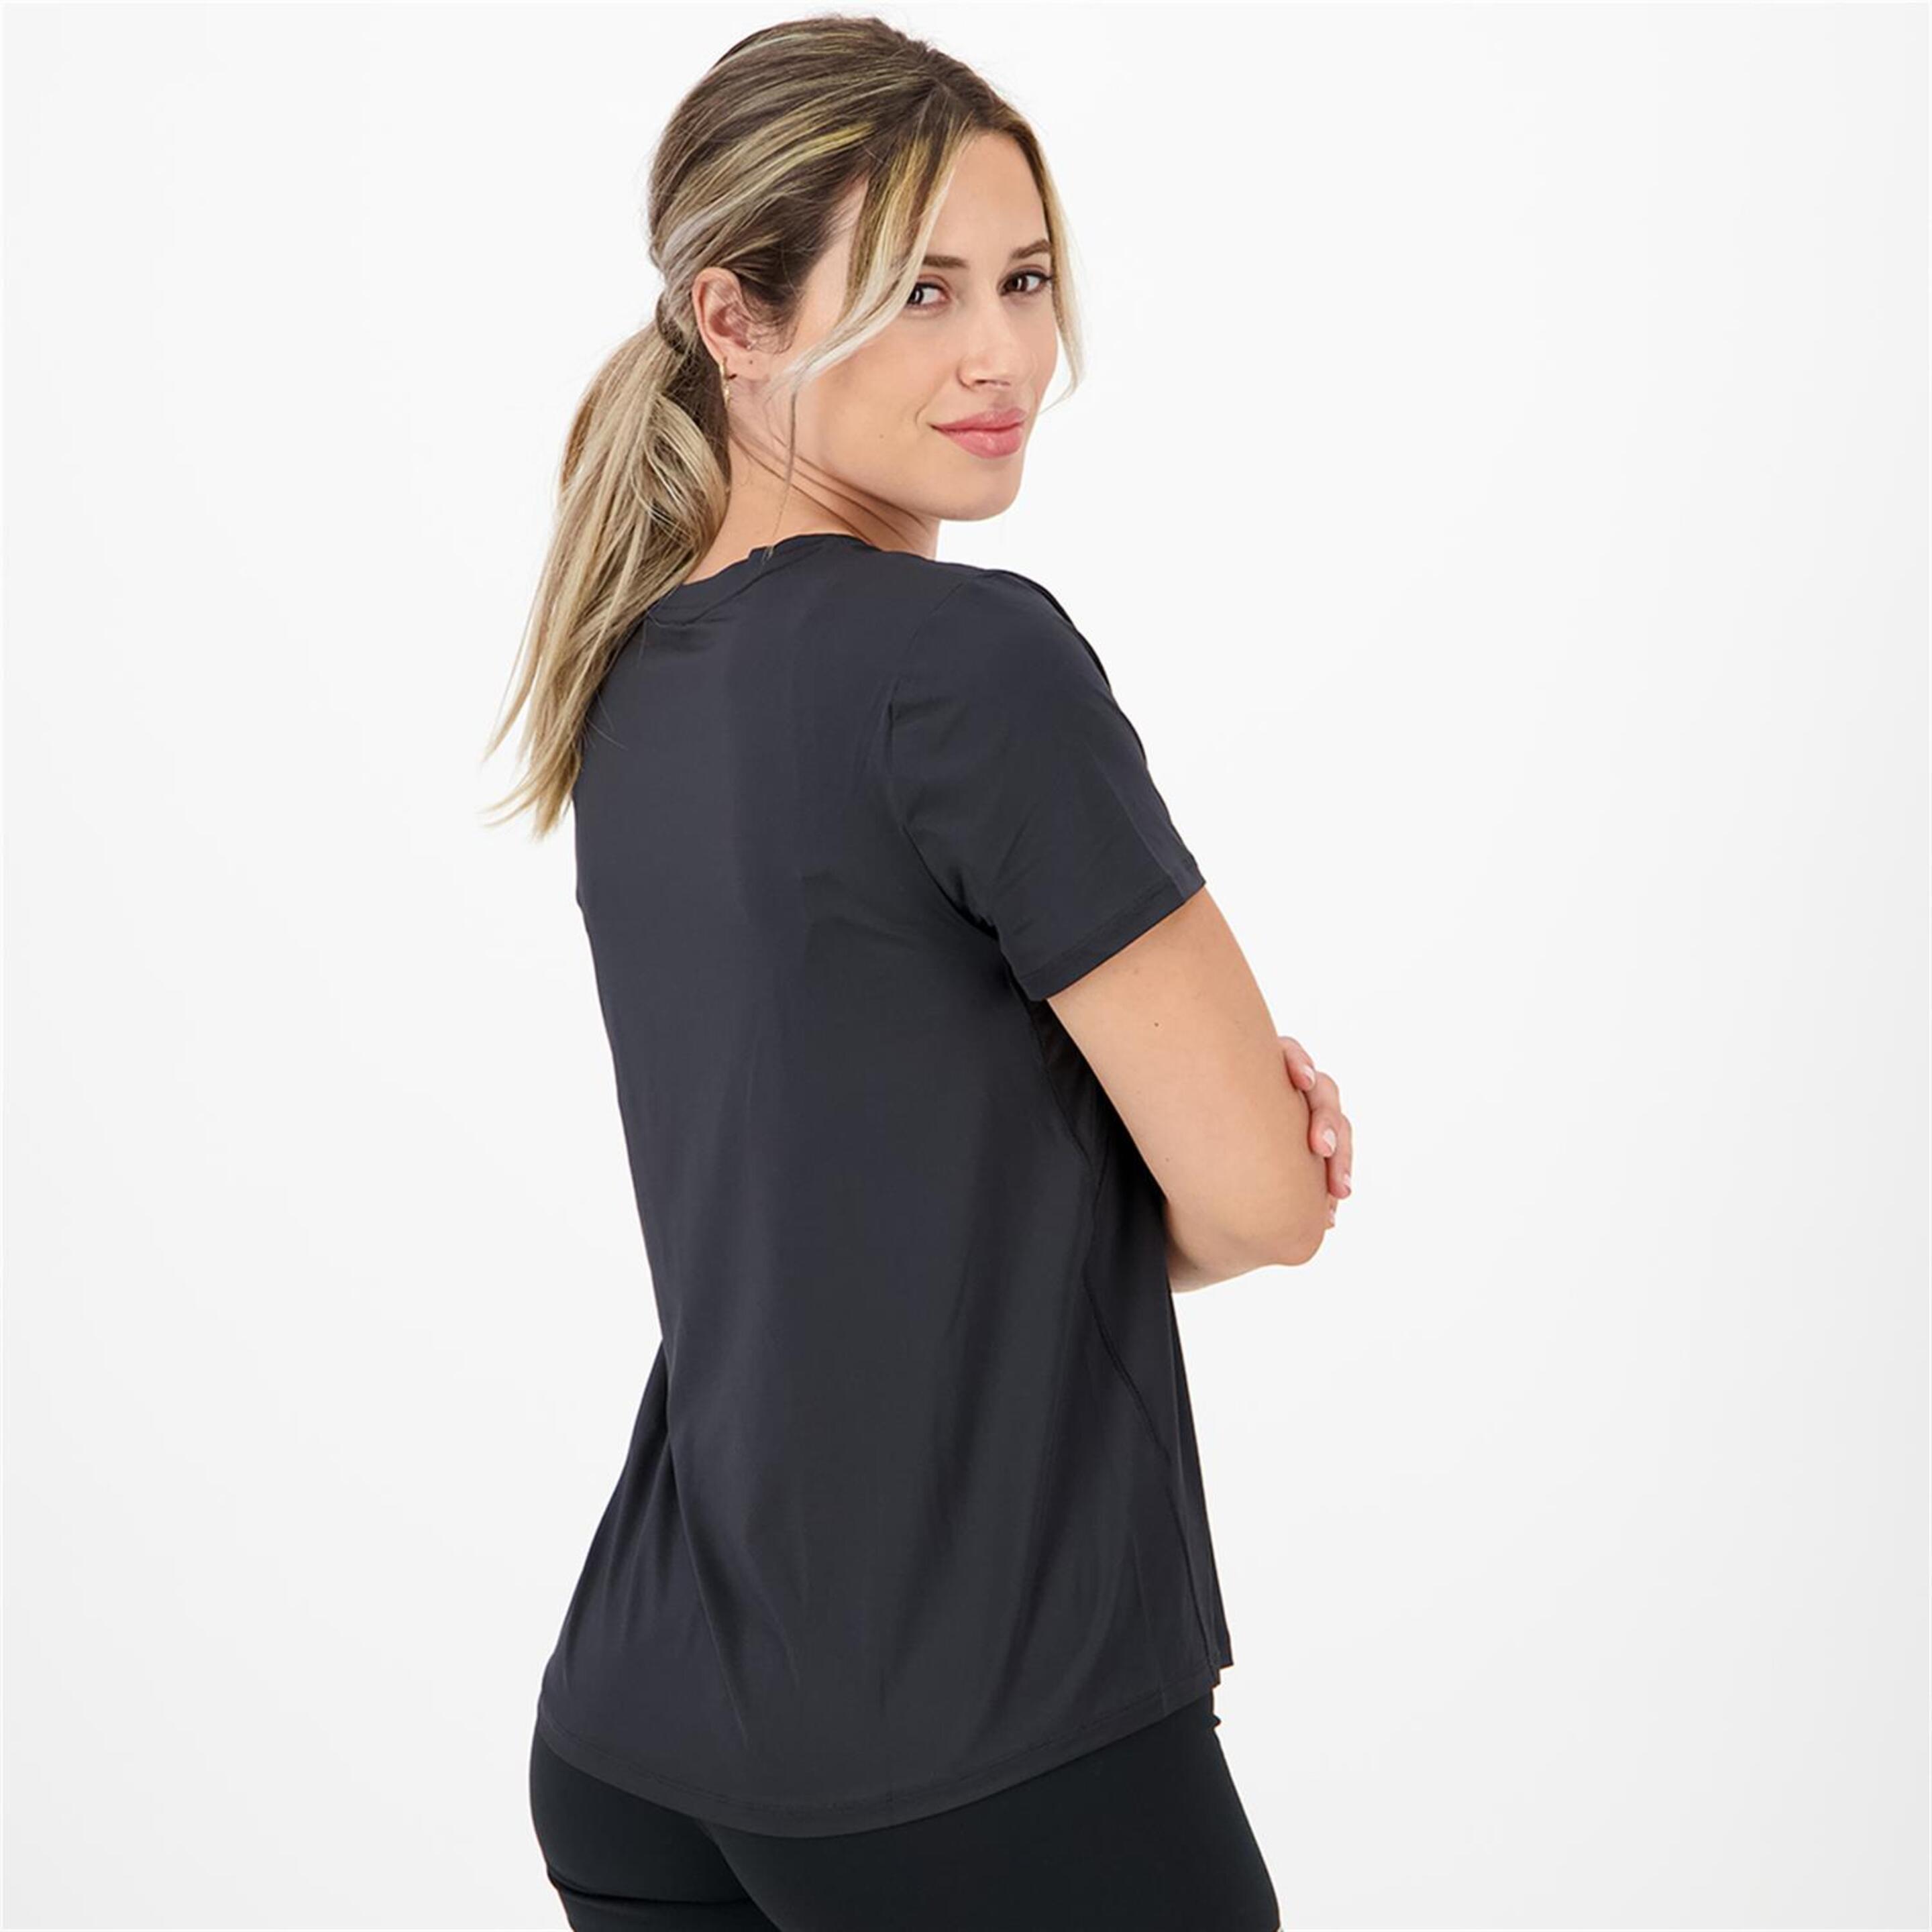 Camiseta Nike - Negro - Camiseta Running Mujer